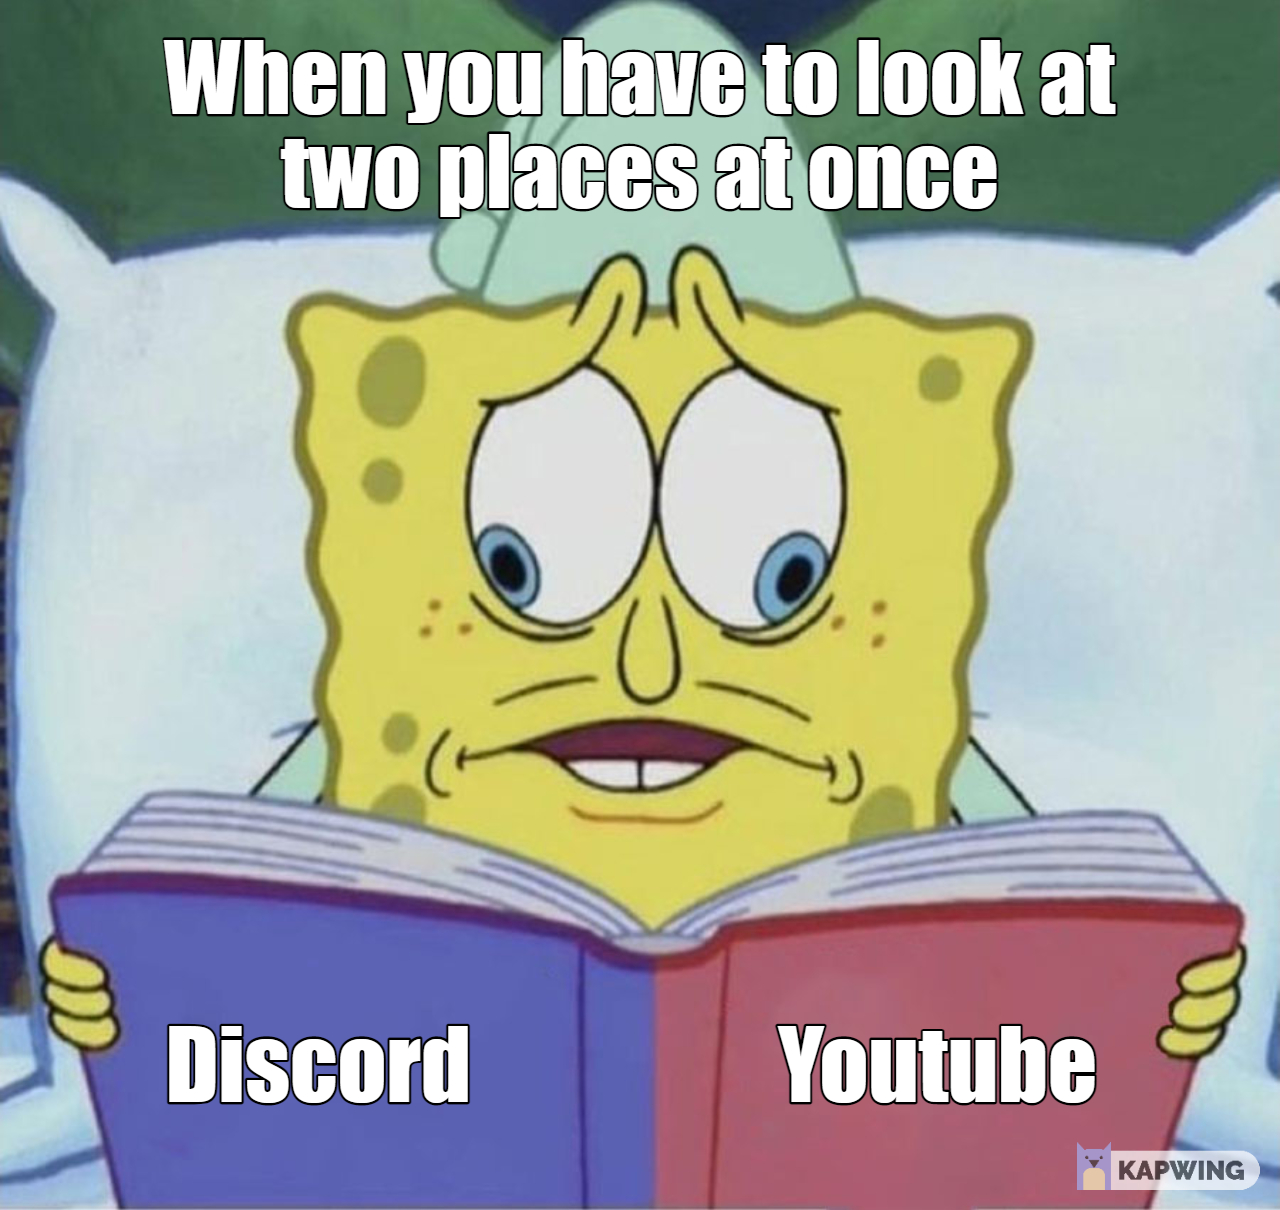 Bild på Spongebob Squarepants vars ögon ser åt olika håll då har tittar på båda sidorna i ett uppslag i en bok. Texten: When you have to look at two places at once, Discord, YouTube.